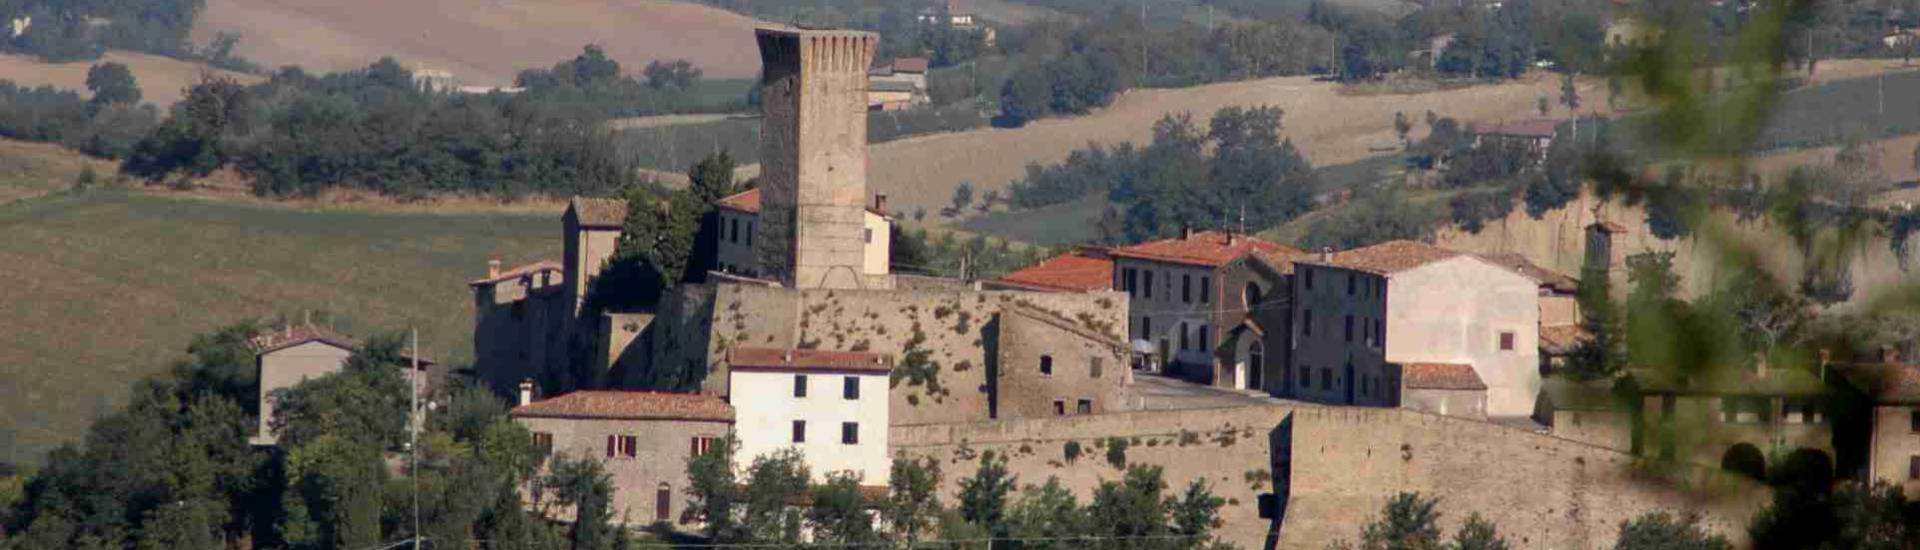 Castello di Teodorano - Borgo e castello di Teodorano photo credits: |anonimo| - Comune di Meldola